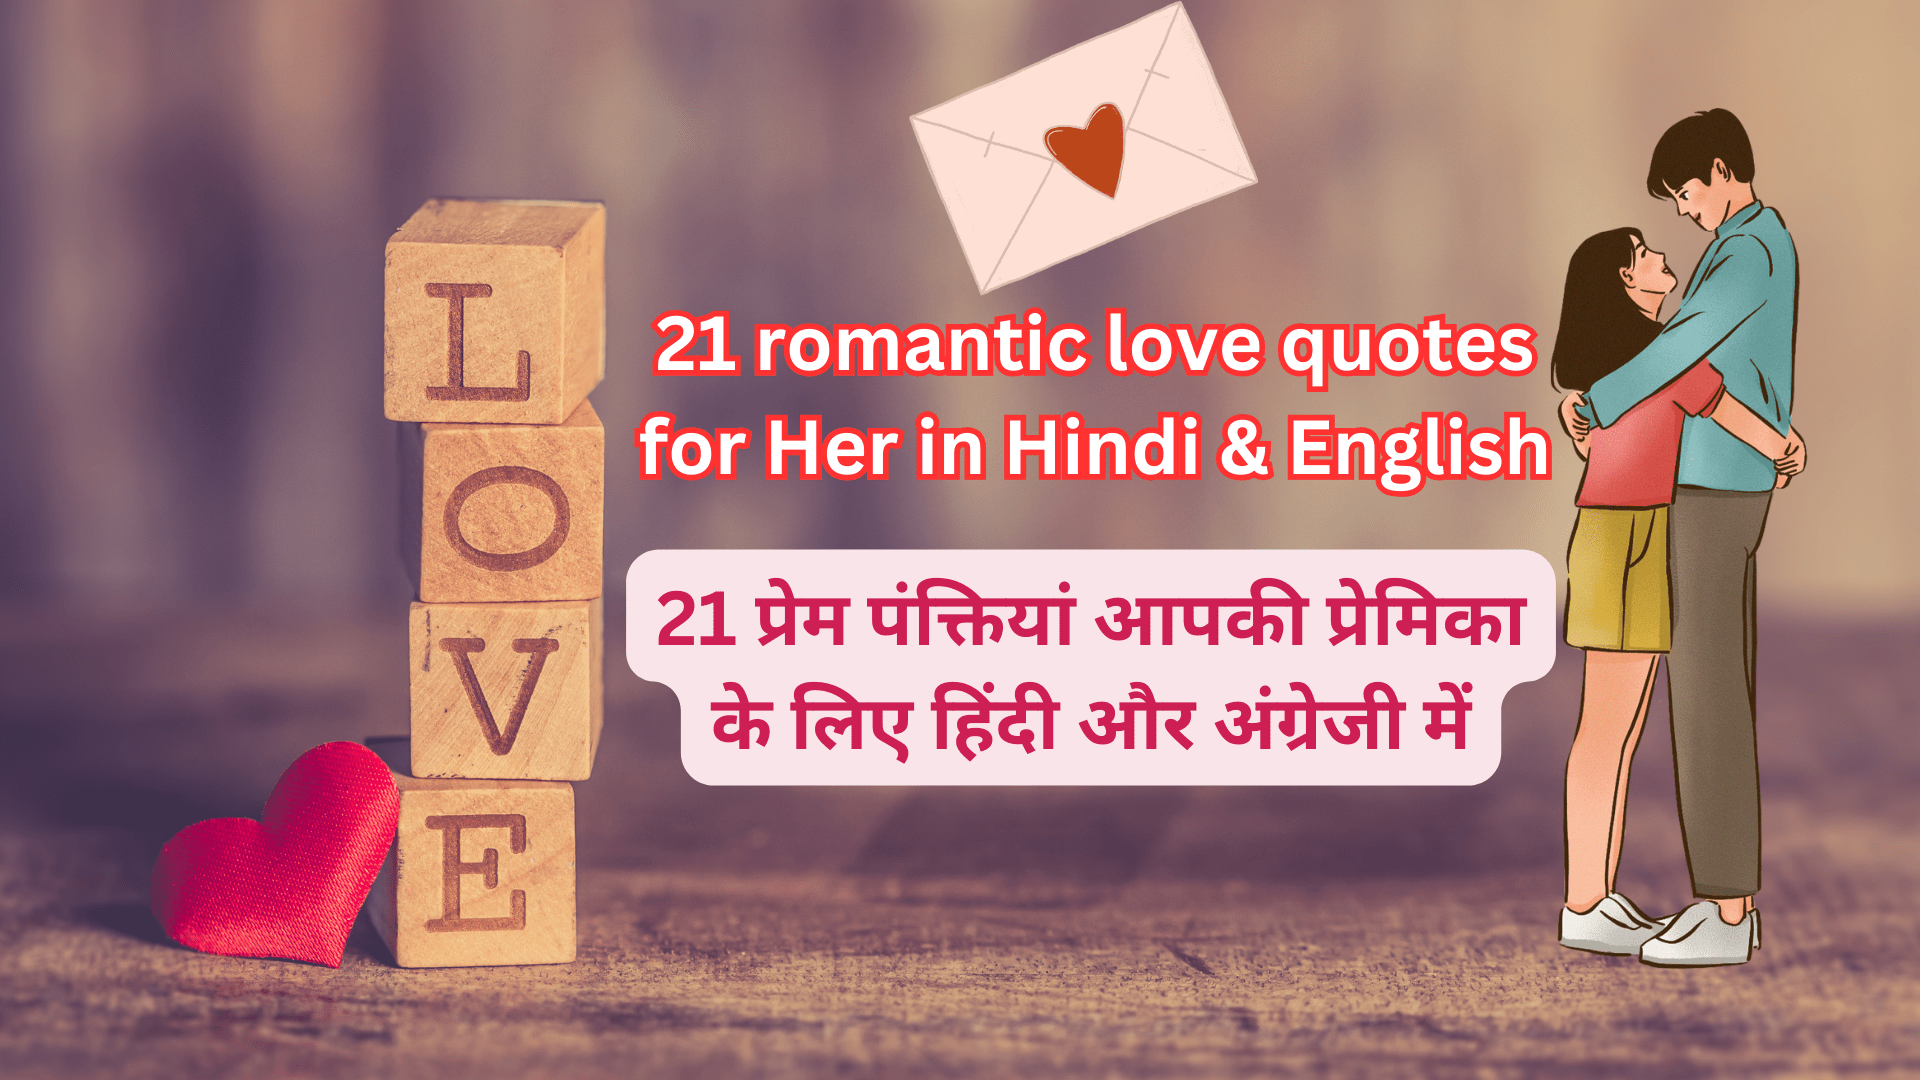 21 romantic love quotes for Her in Hindi & English | 21 प्रेम पंक्तियां आपकी प्रेमिका के लिए हिंदी और अंग्रेजी में - PyarHai - प्यार है तो ज़ाहिर करो